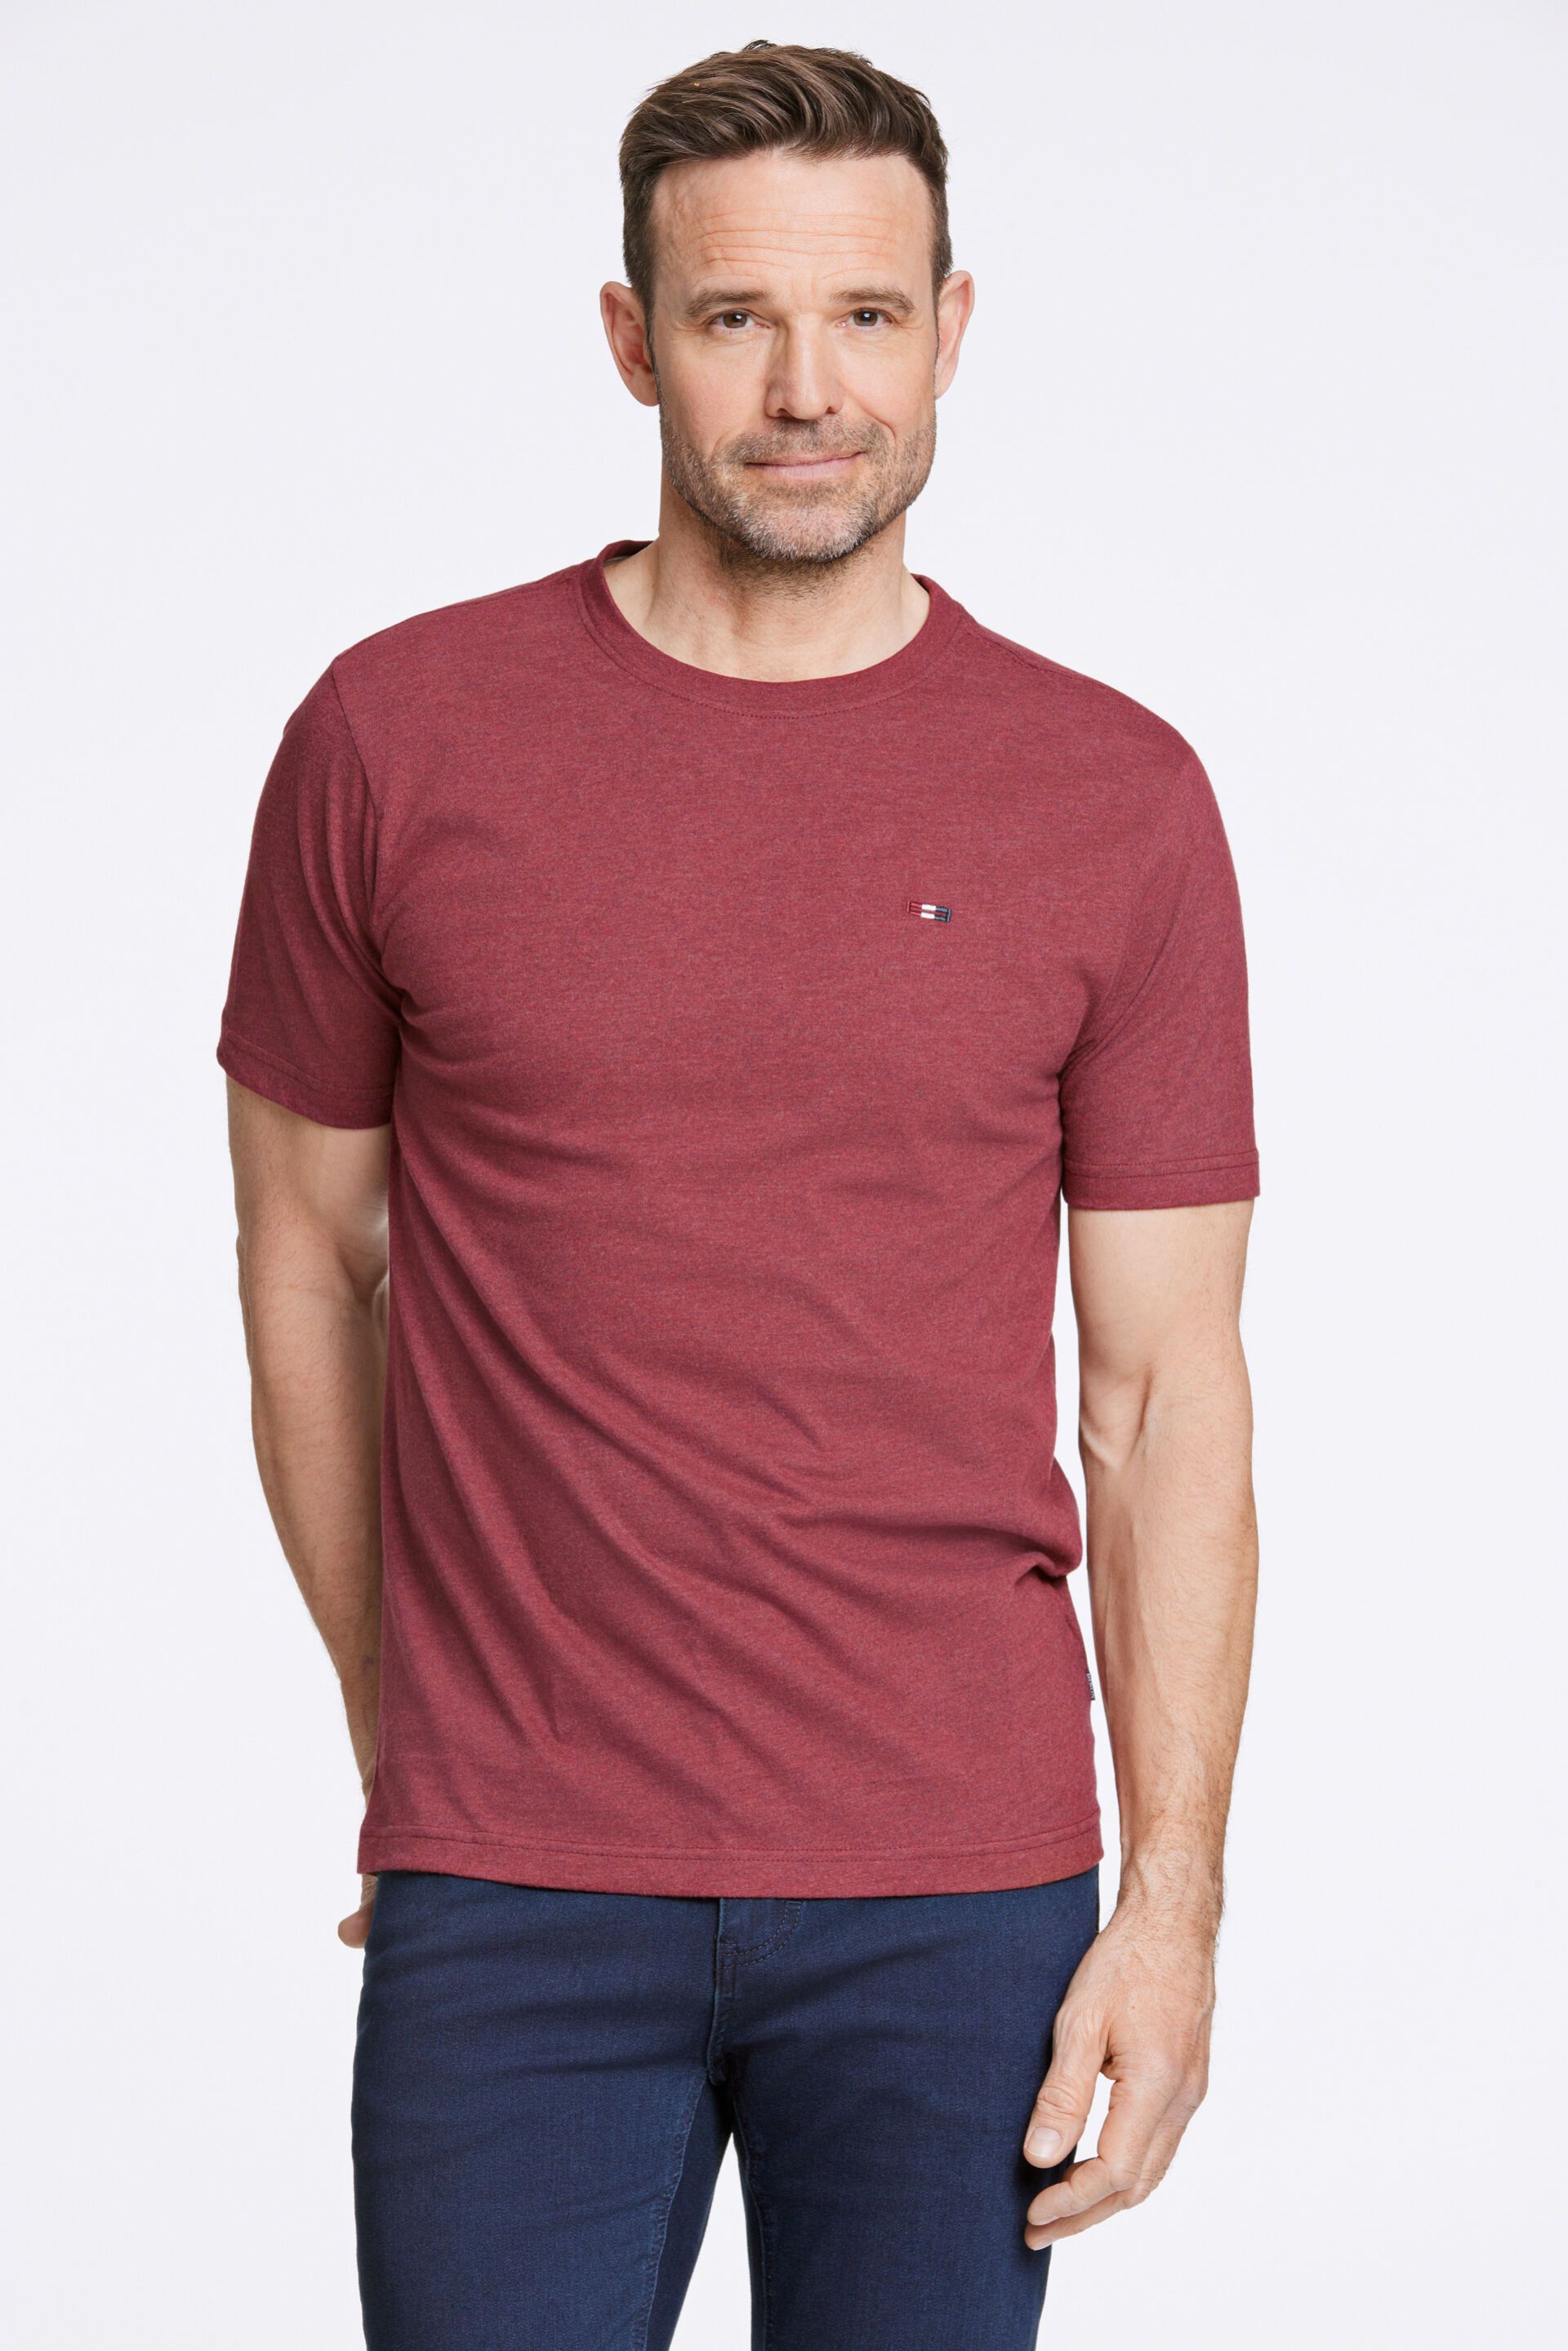 Bison  T-shirt Rød 80-400111A